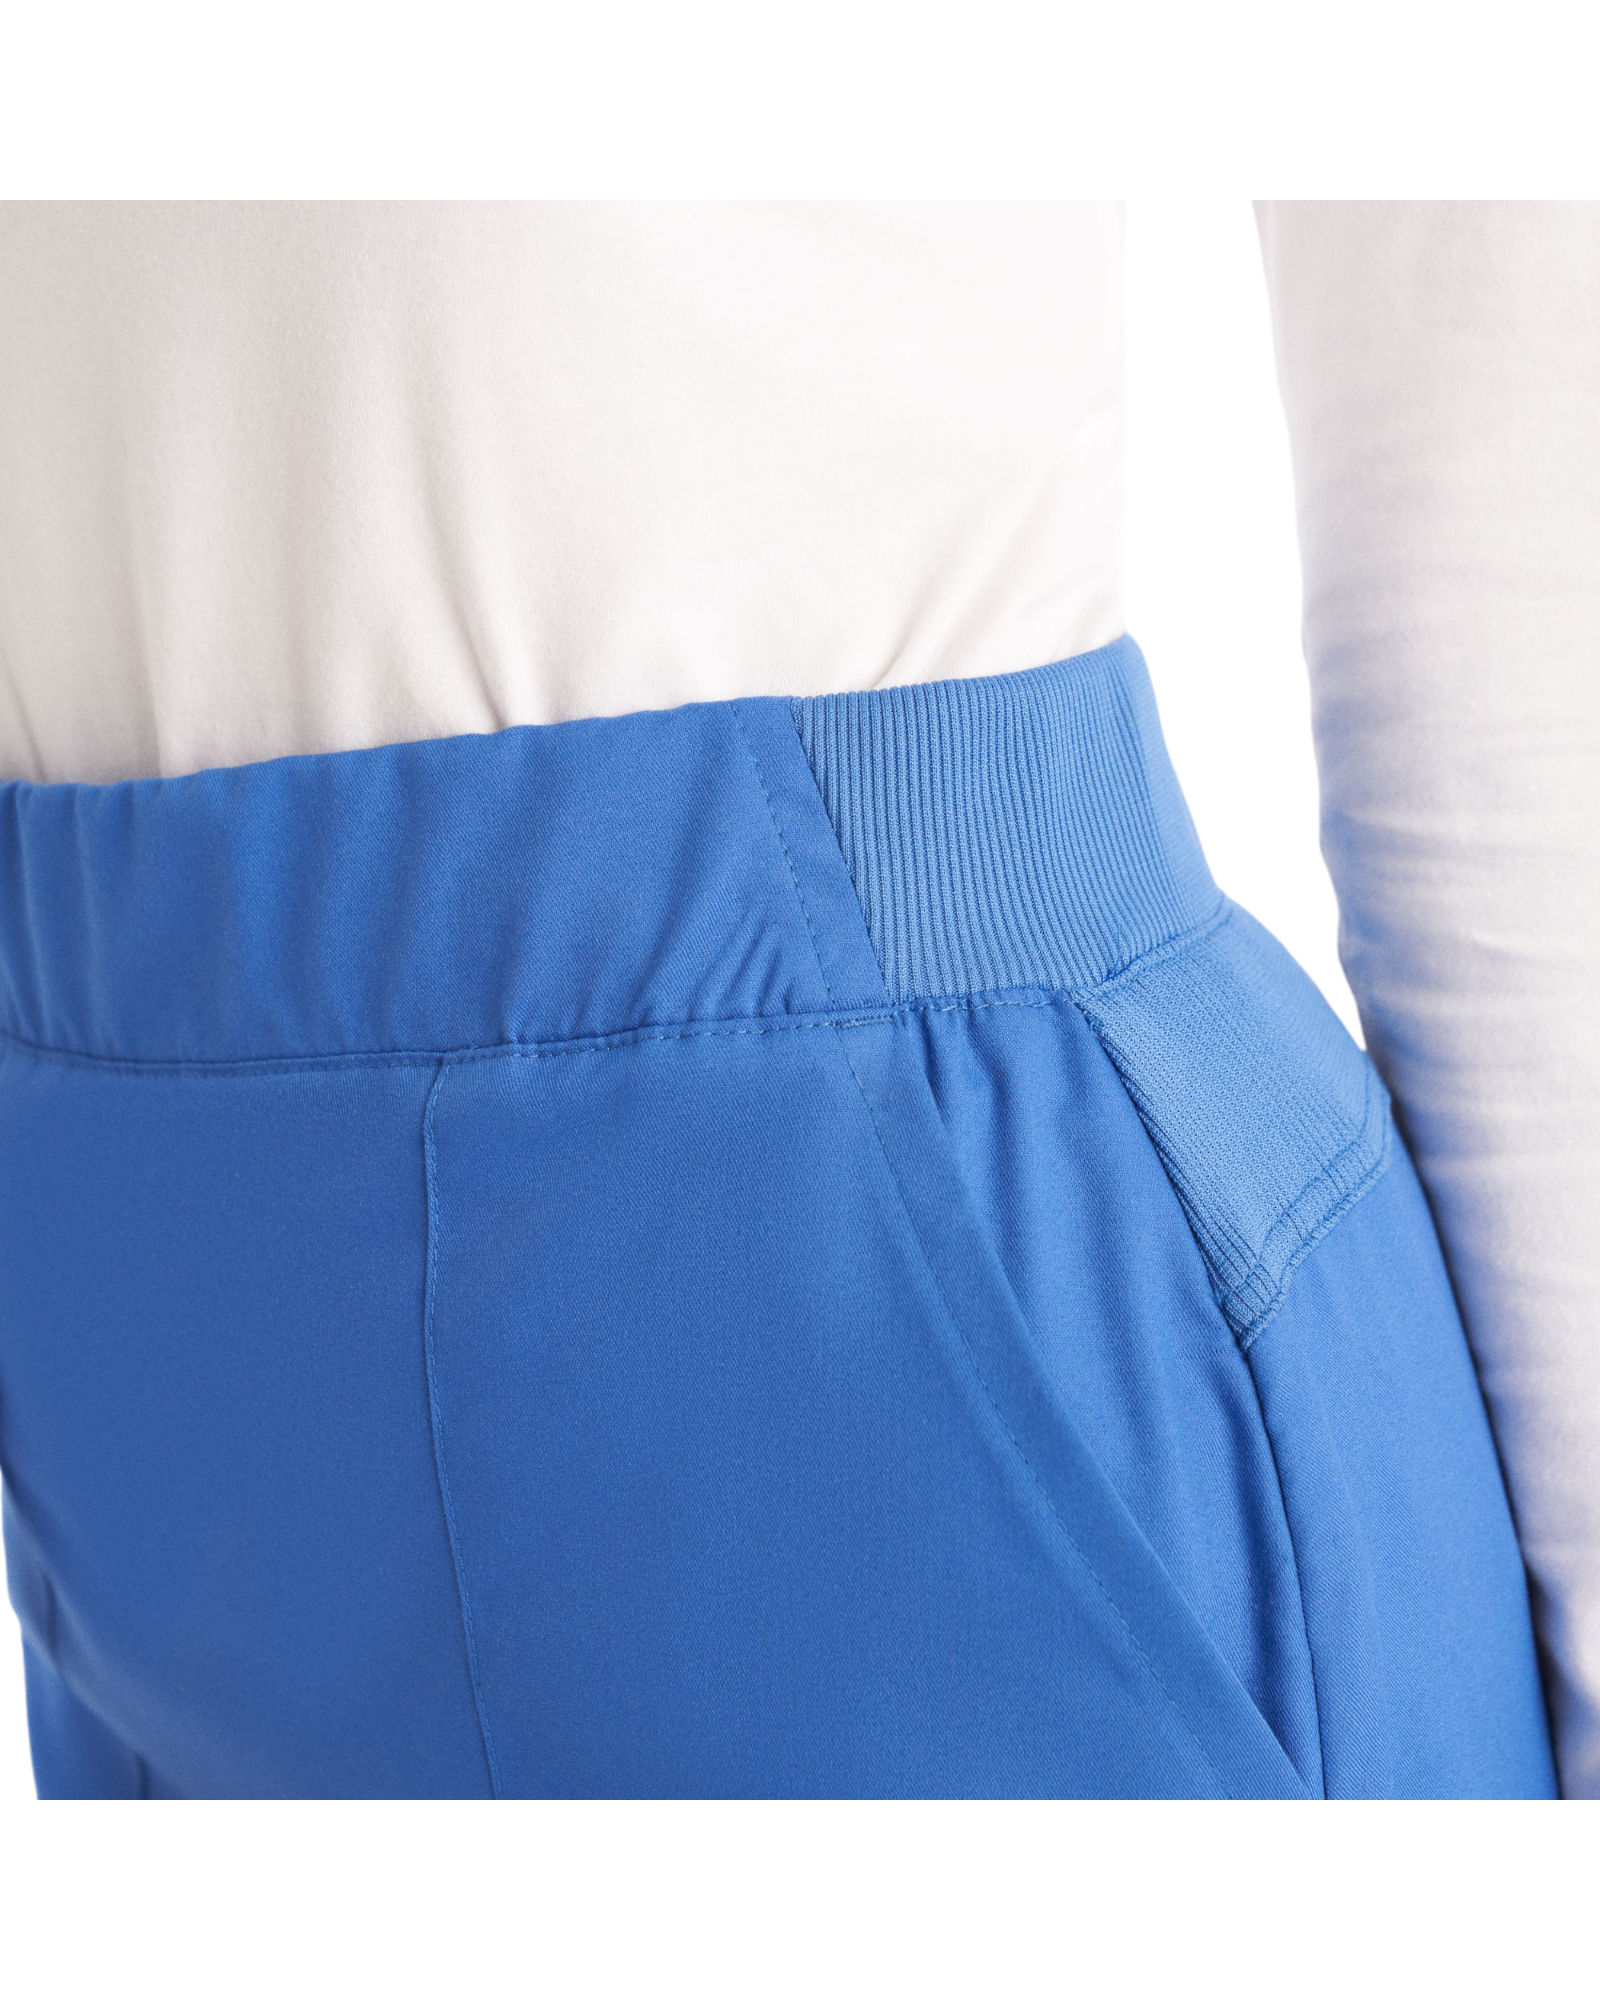 Vue de la poche latérale et bande élastique de la taille de la jupe de style cargo 6 poches pour femmes Landau Proflex #LK600-OS